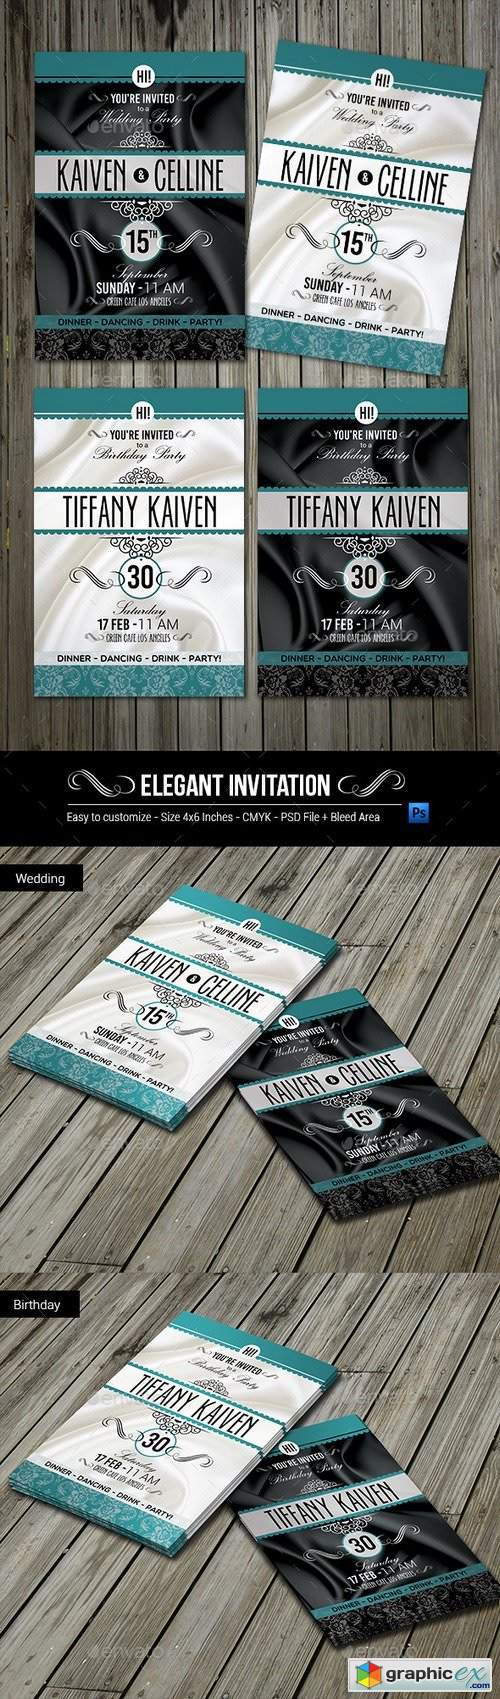 Elegant Invitation